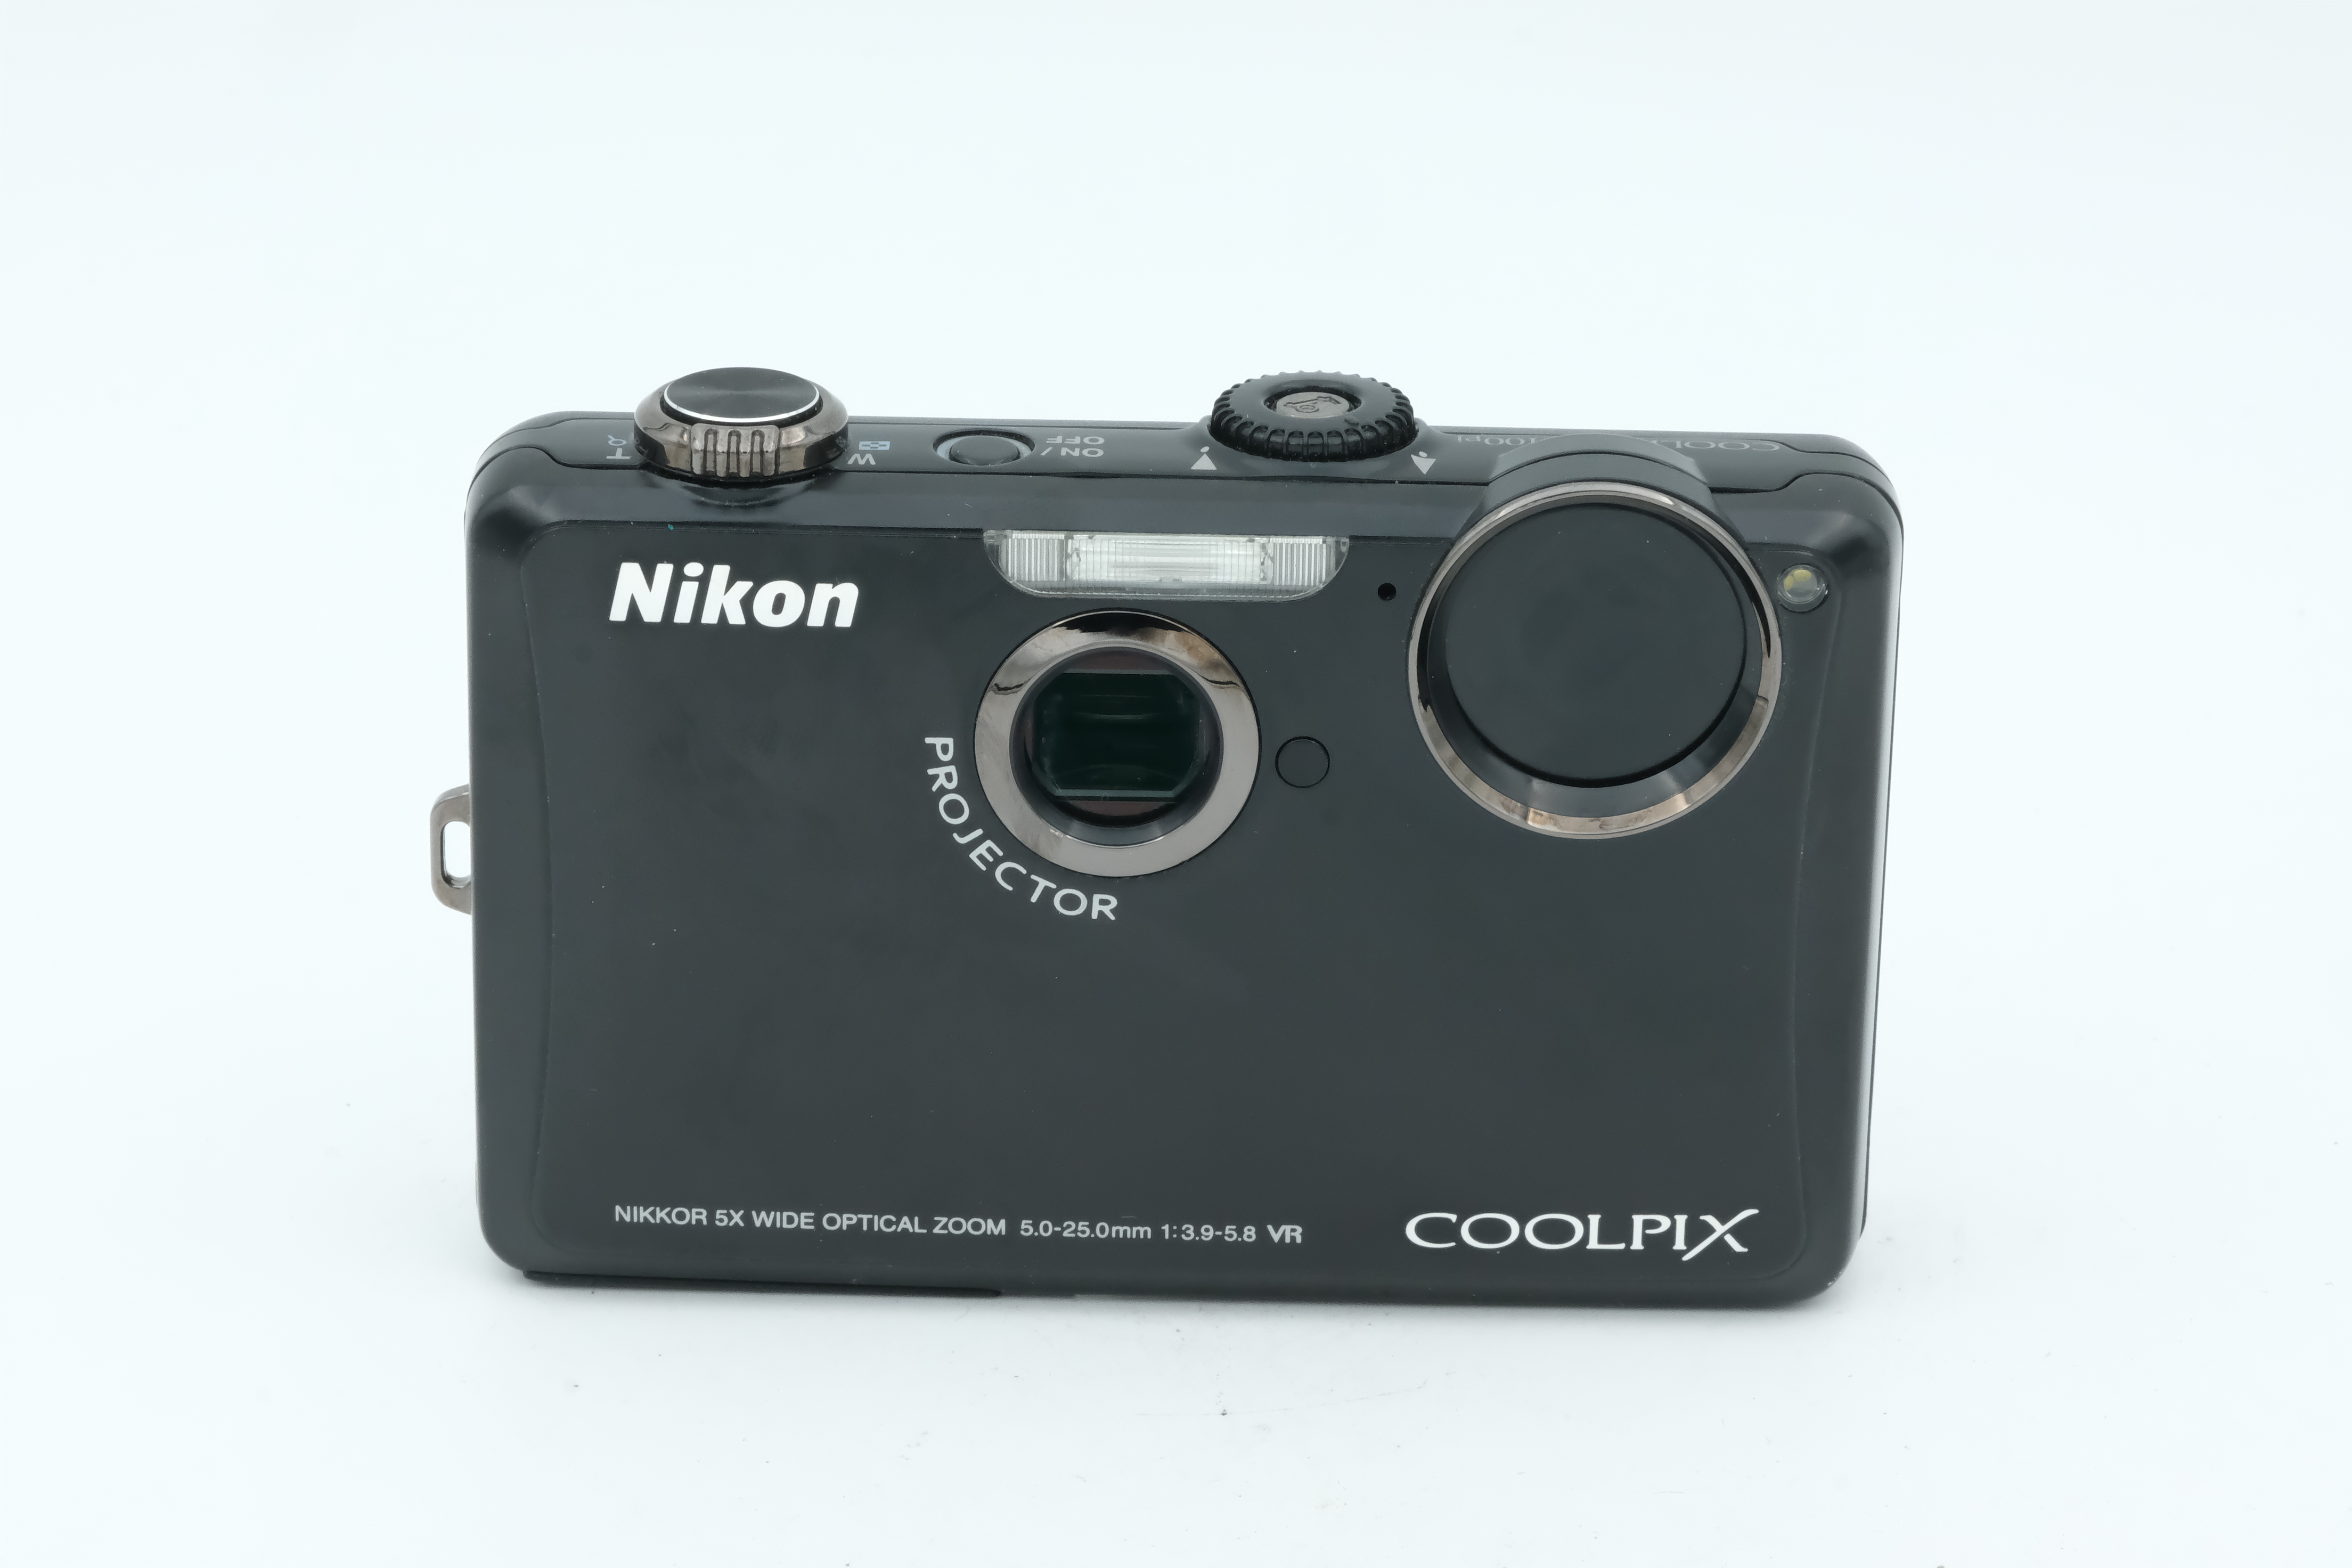 Nikon Coolpix S1100pj, 28-140mm 3,9-5,8 VR Bild 01